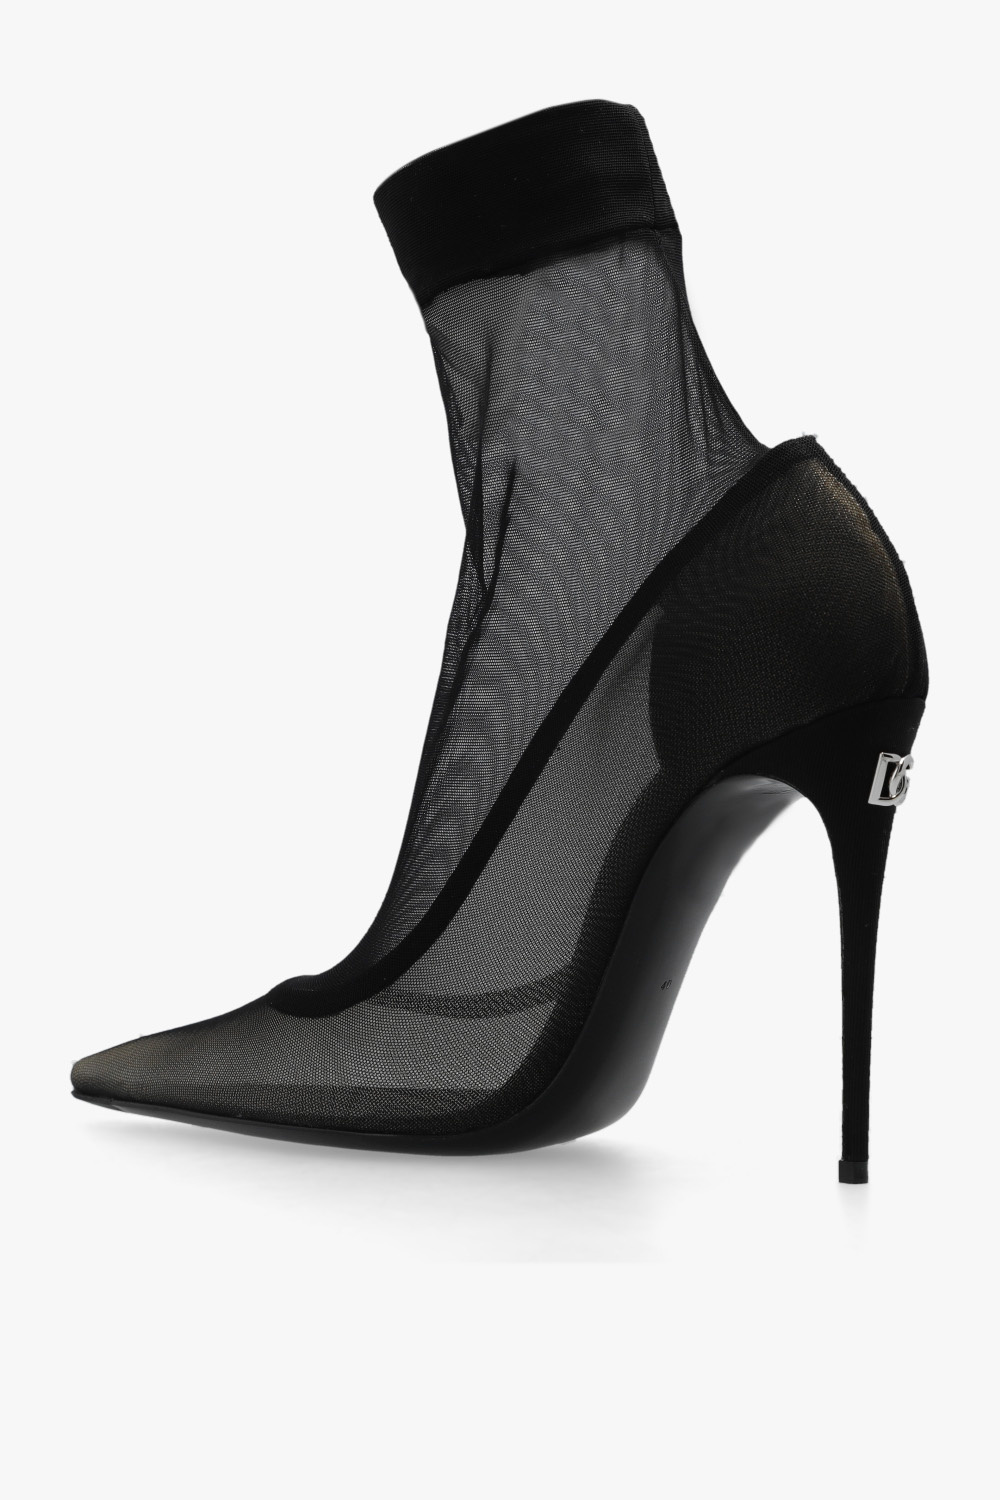 Dolce & Gabbana ‘Kim’ heeled boots